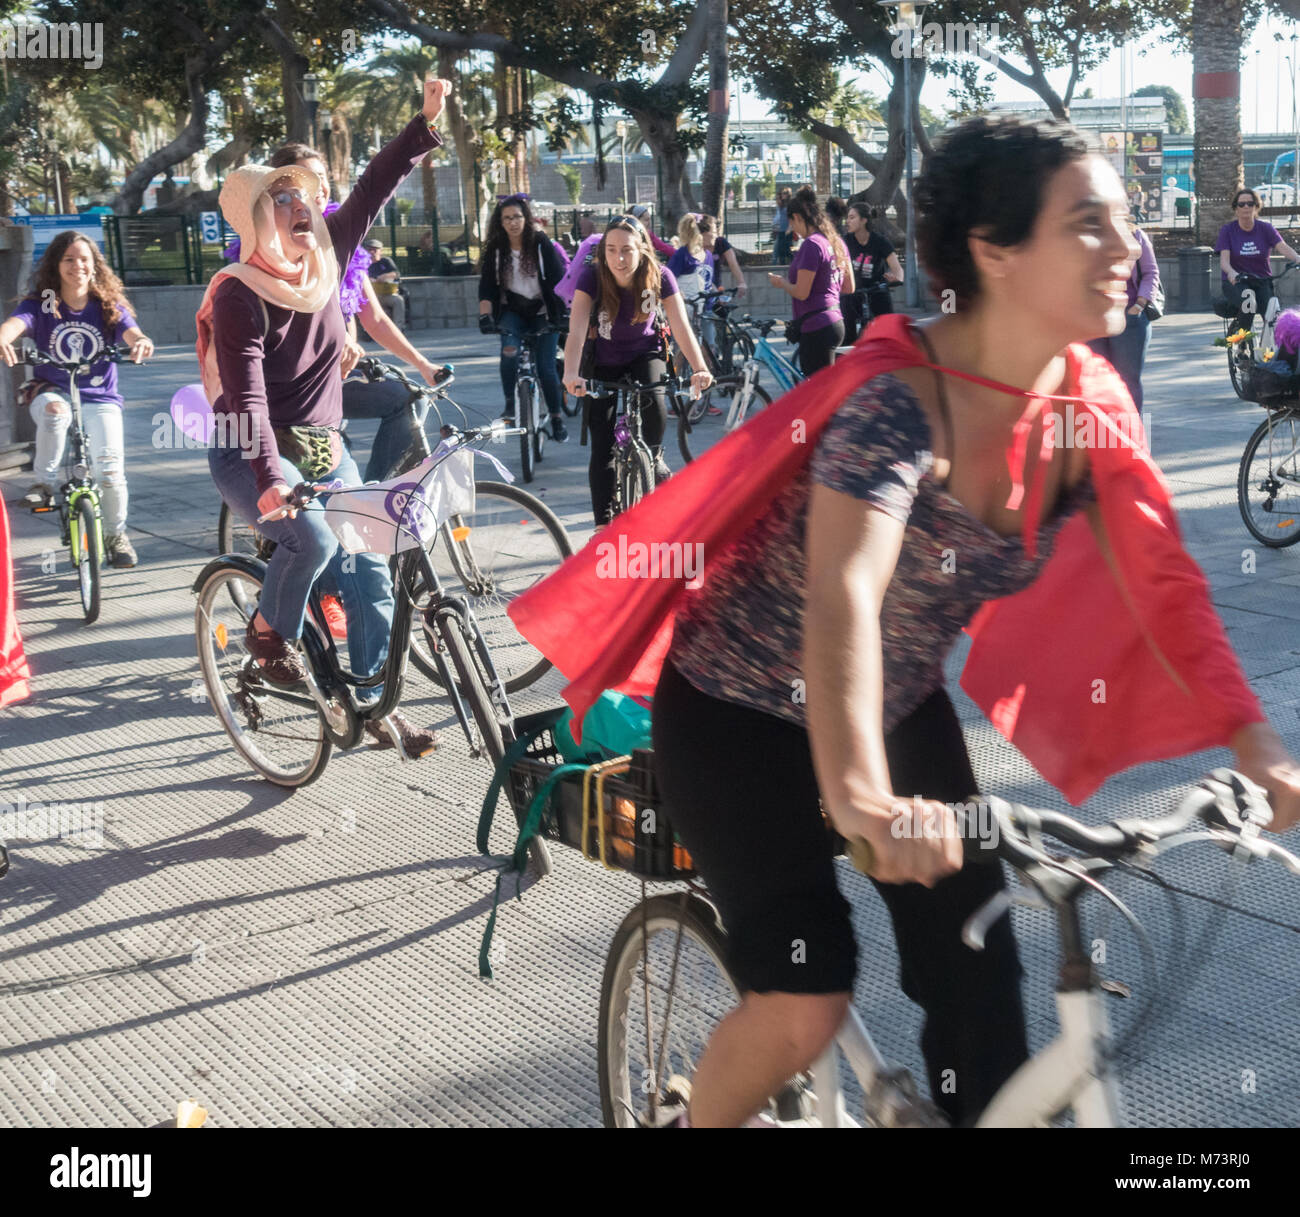 Las Palmas de Gran Canaria, Islas Canarias, España. 8 de marzo, 2018. Las mujeres toman las calles en bicicleta en el Día Internacional de la mujer en Las Palmas, capital de Gran Canaria. Crédito: Alan Dawson/Alamy Live News Foto de stock